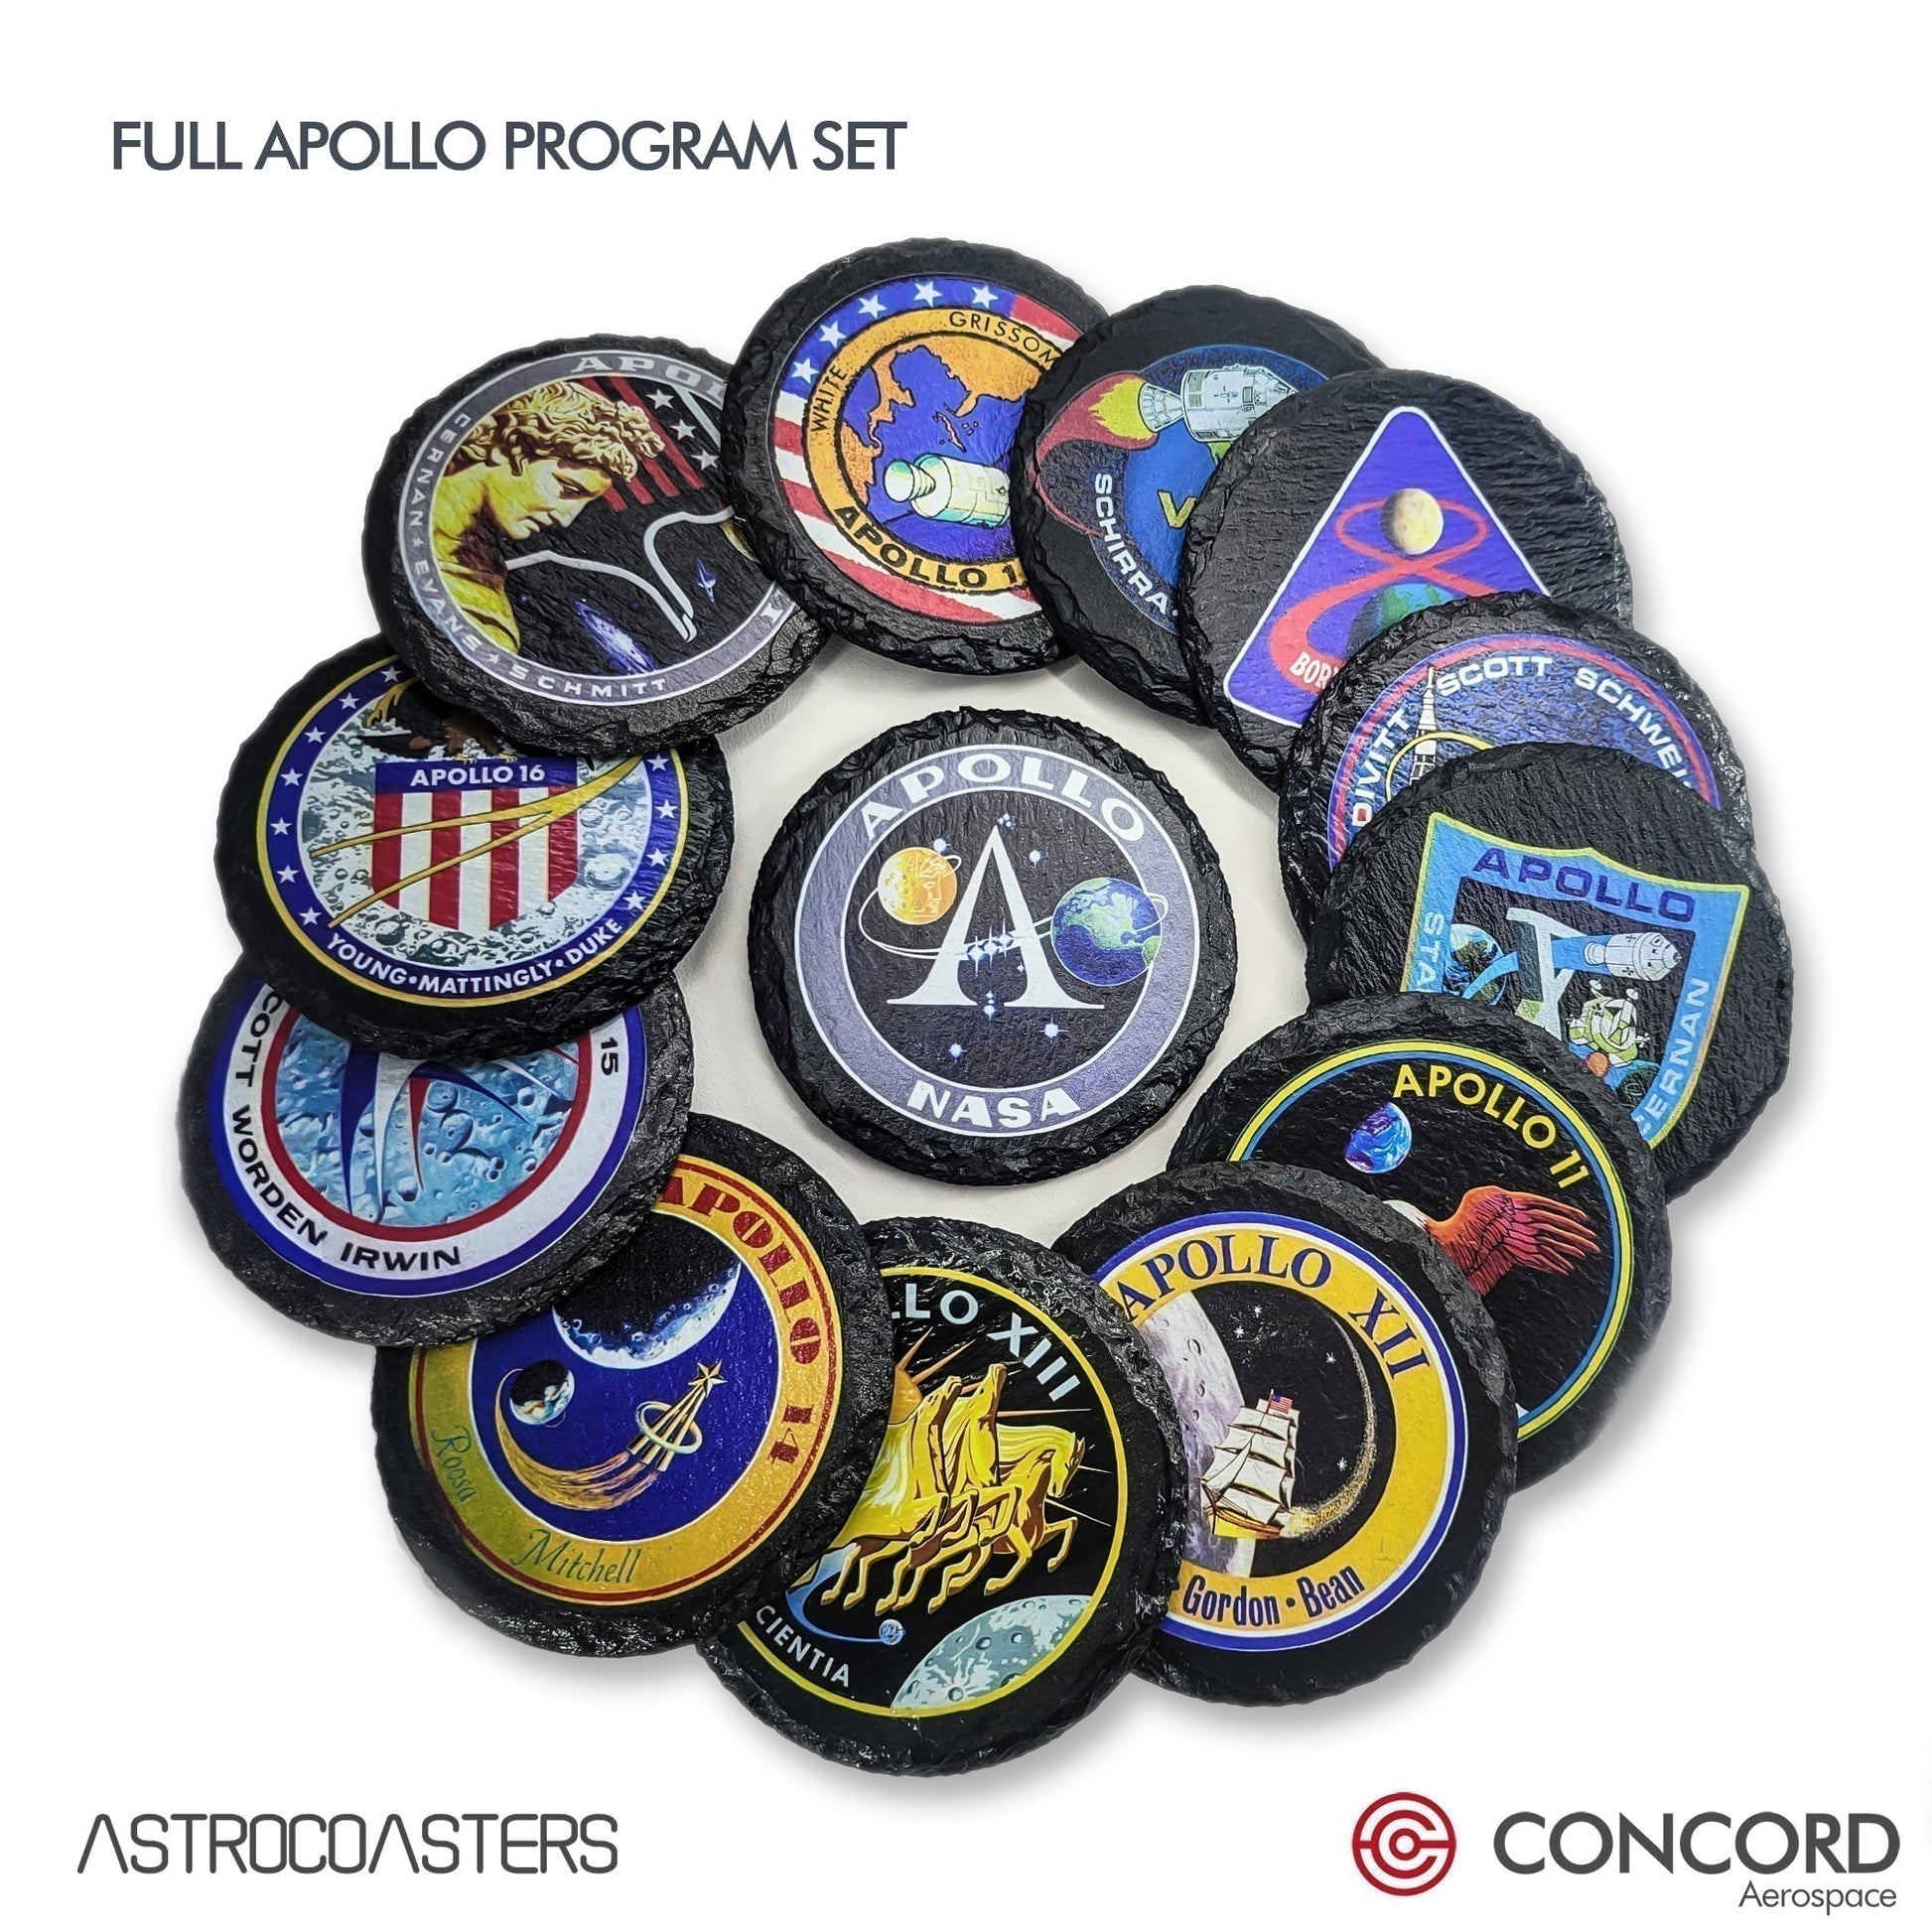 SPACE CHALLAH BREAD - SLATE COASTER - Concord Aerospace Concord Aerospace Concord Aerospace Coasters